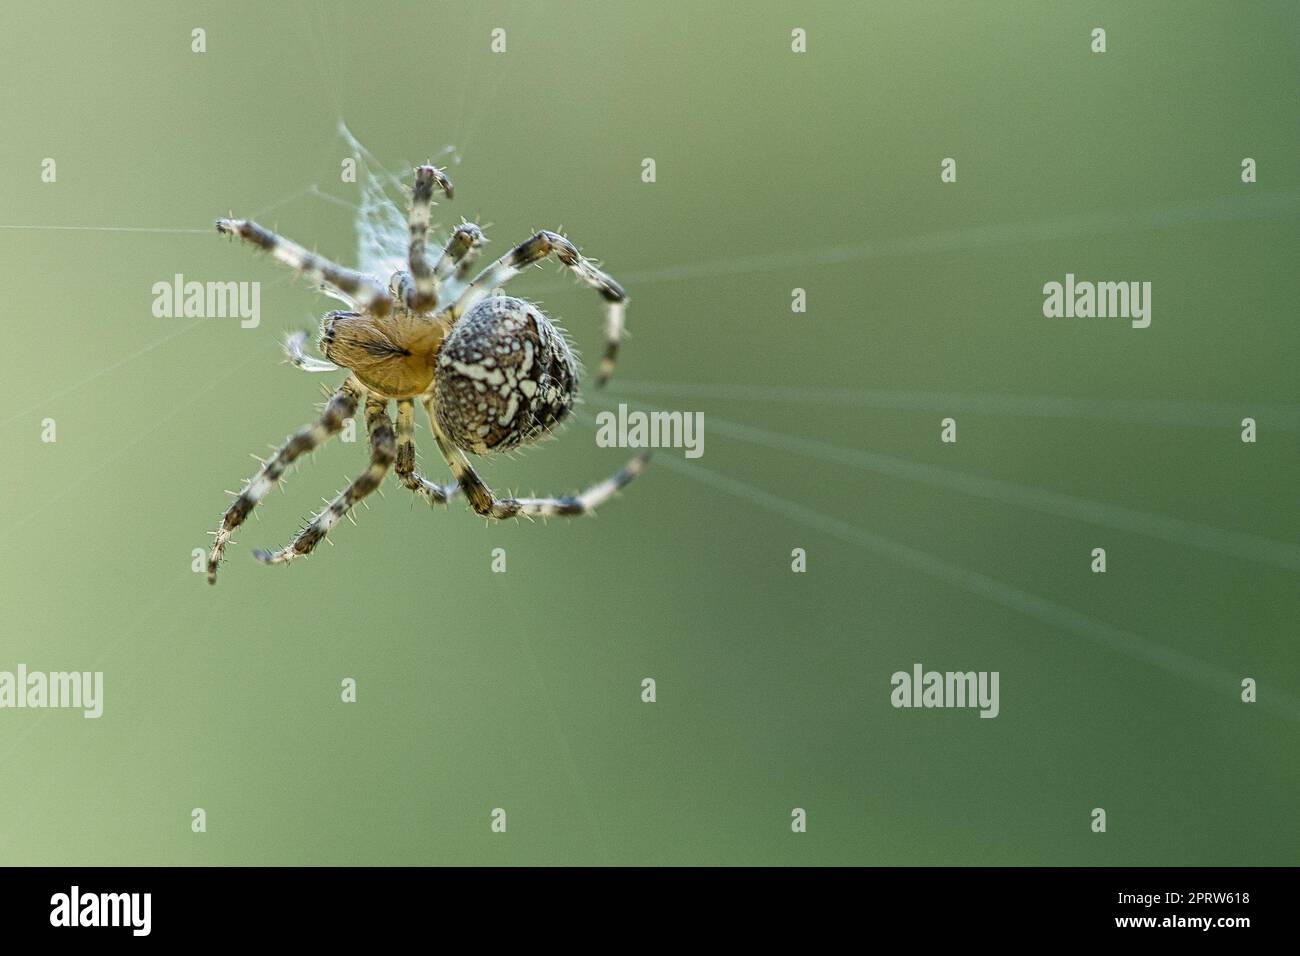 Kreuzspinne in einem Spinnennetz, lauert auf Beute. Unscharfer Hintergrund Stockfoto